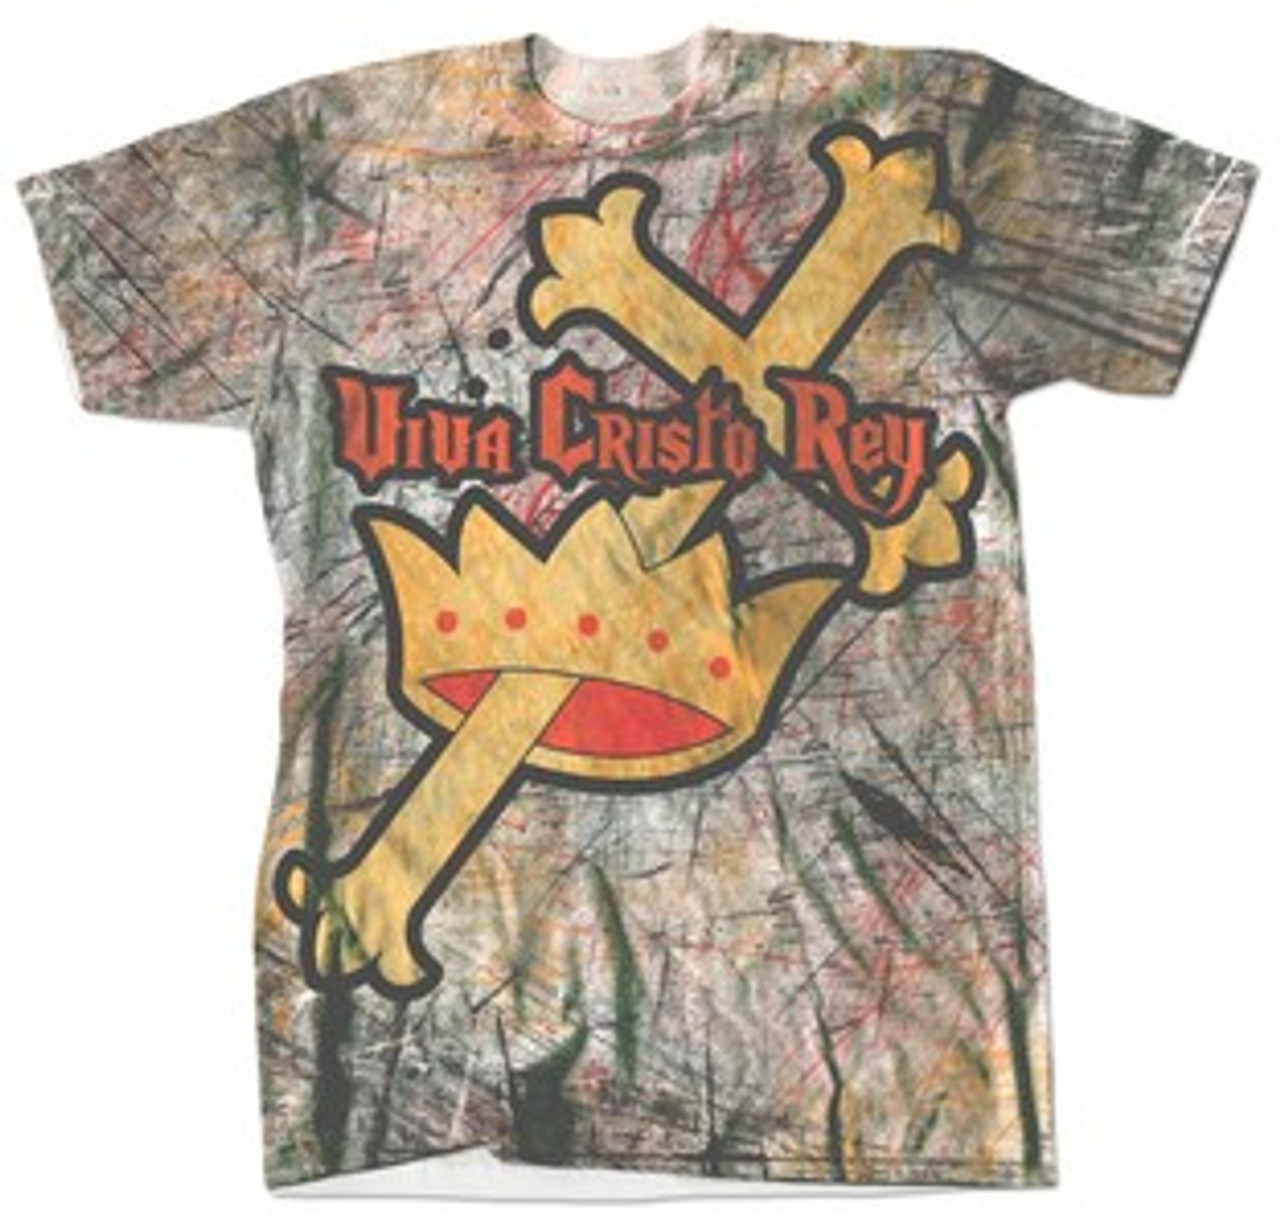 Viva Cristo Rey Full Color T-Shirt